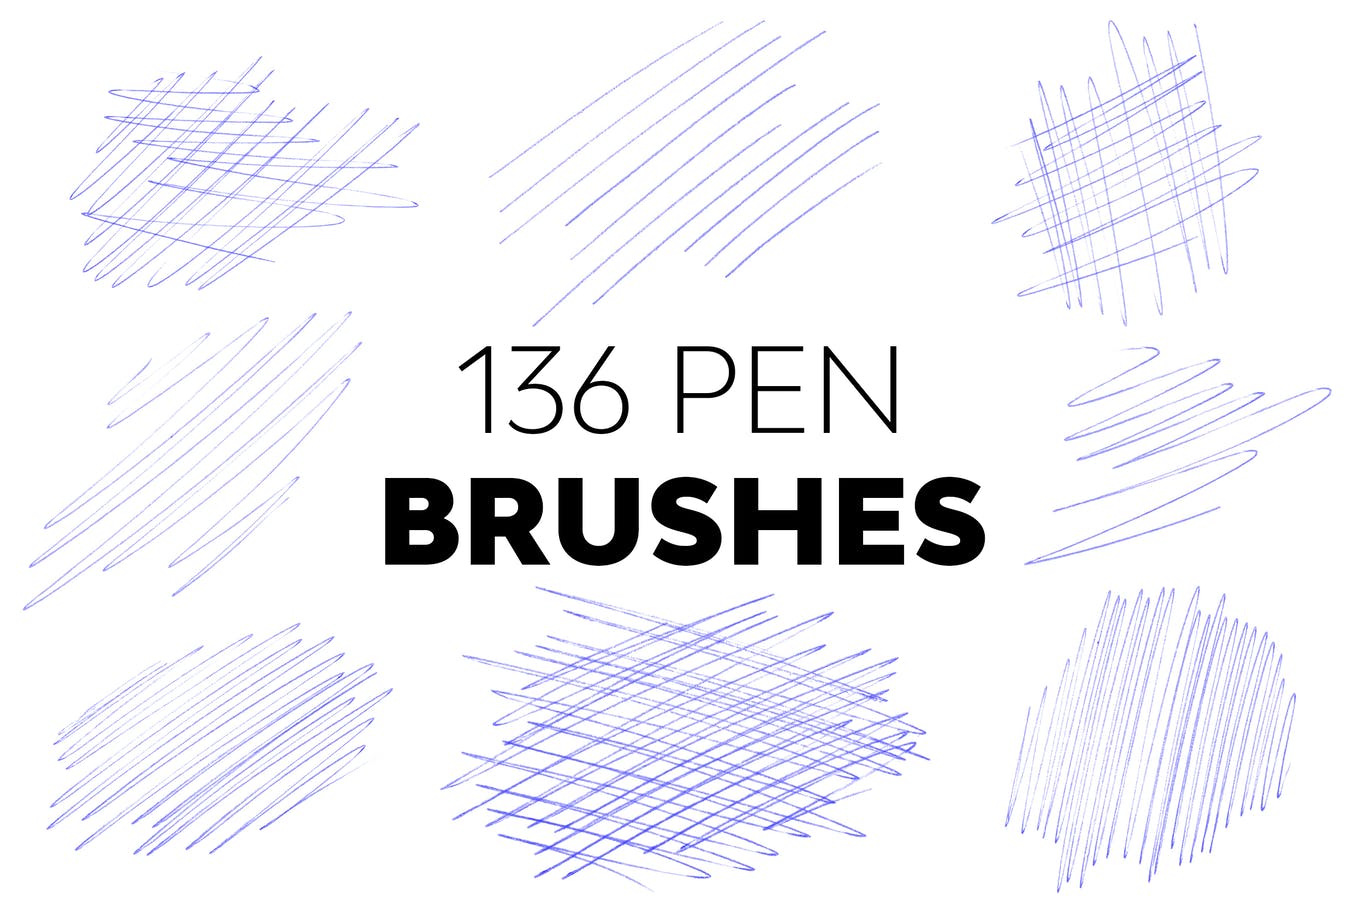 圆珠笔素描PS笔刷素材 Pen Brushes